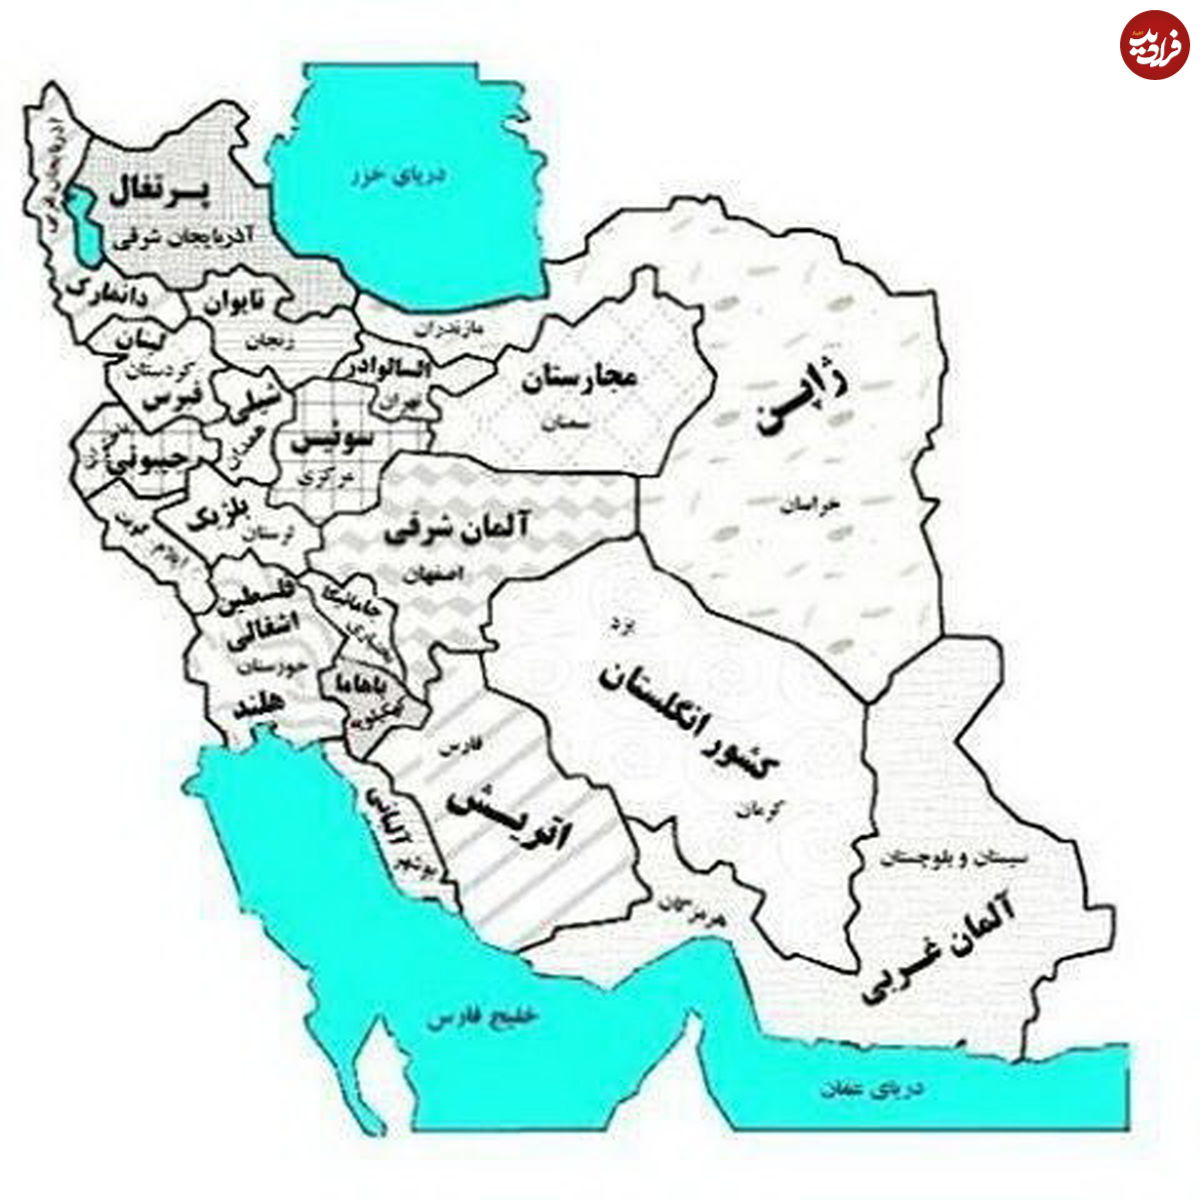 اگر ایران در اروپا بود!